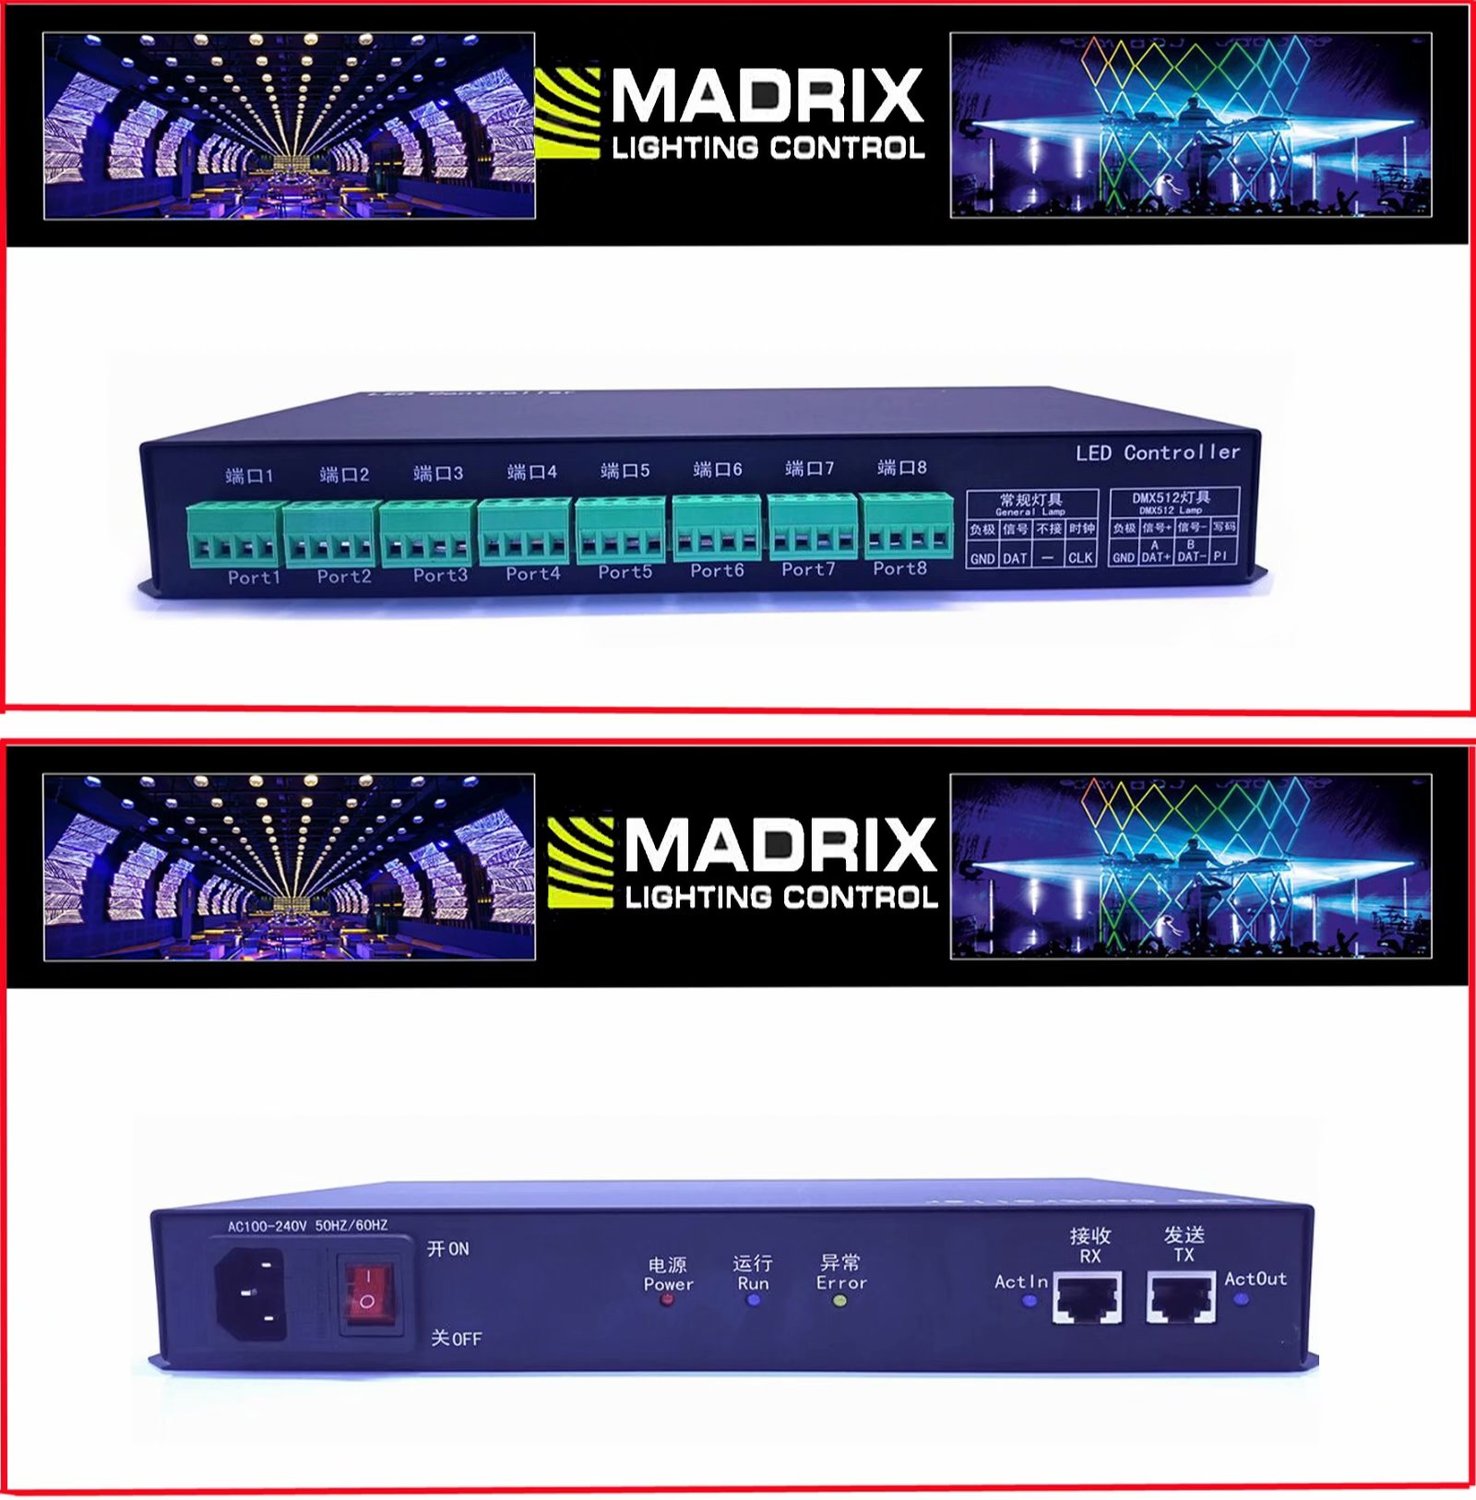 8和16端口通道Madrix ArtNet LED控制器